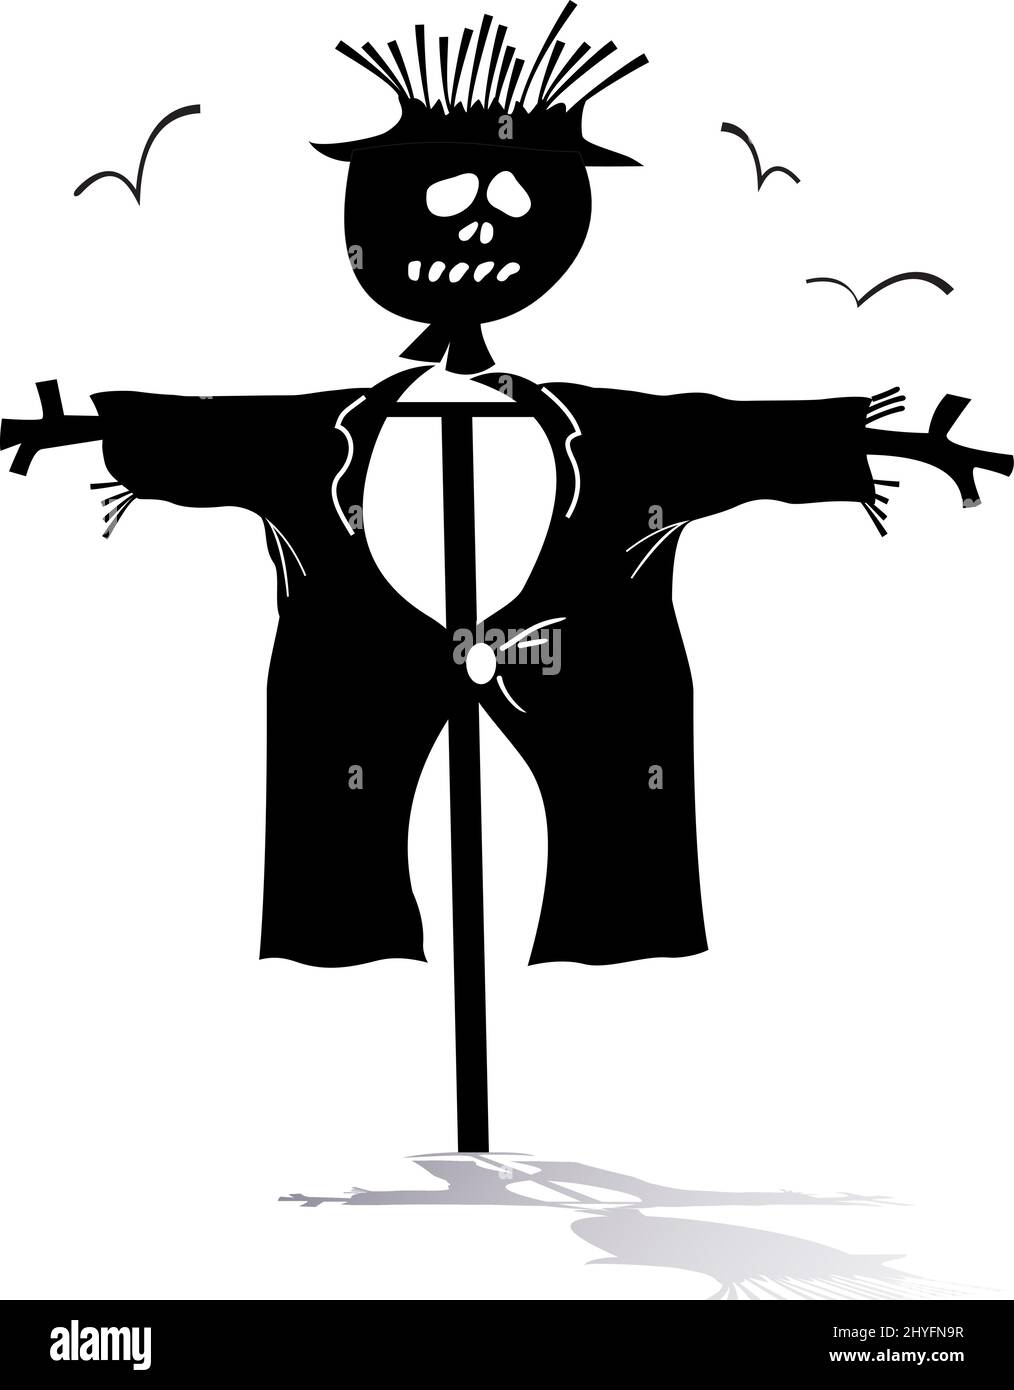 Divertente illustrazione della silhouette di scarecrow. Cartoon scarecrow e uccelli nero su sfondo bianco Illustrazione Vettoriale